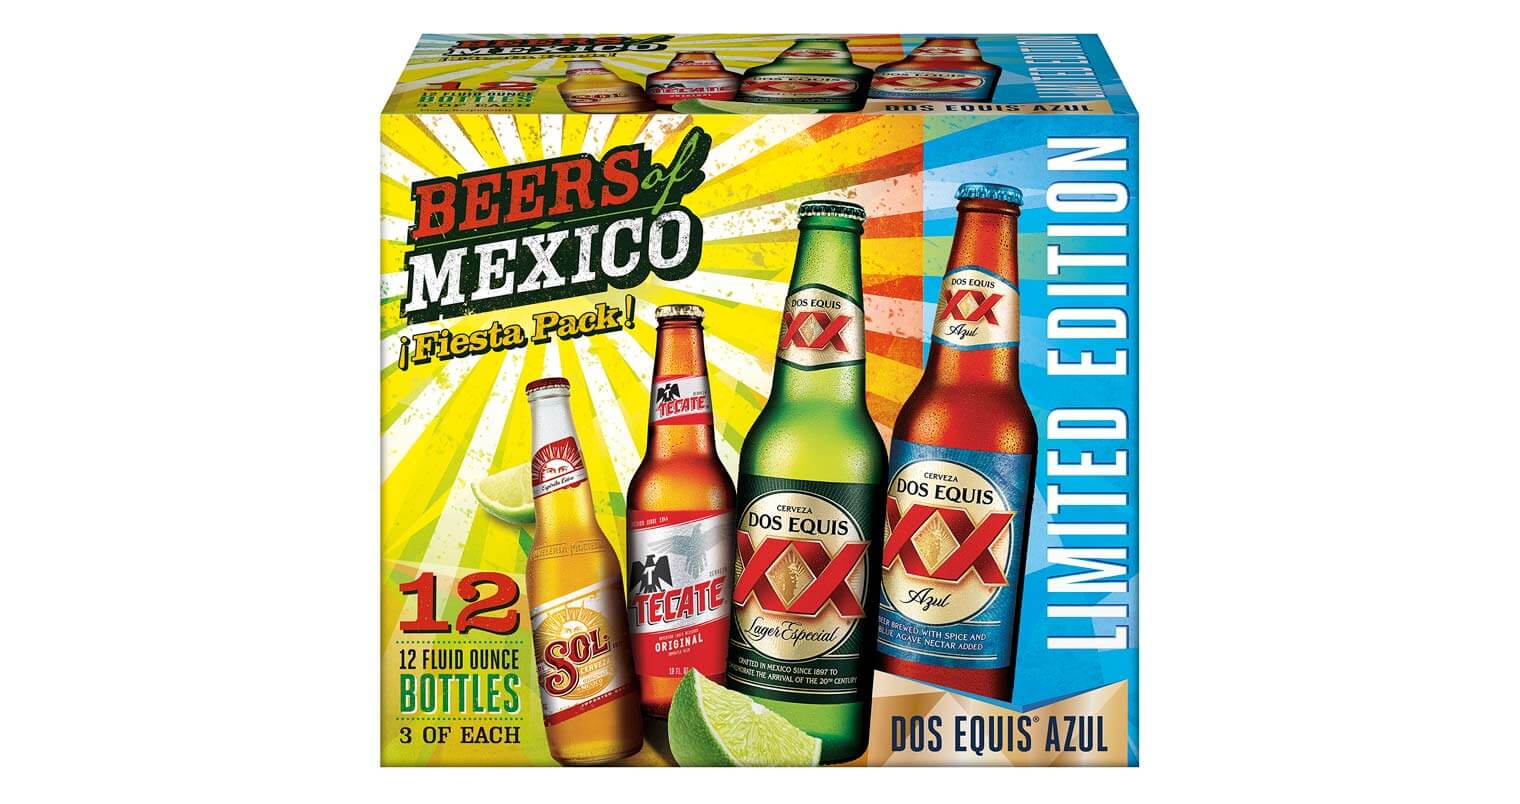 Heineken USA 'Beers of Mexico' Variety Pack Returns, beer news